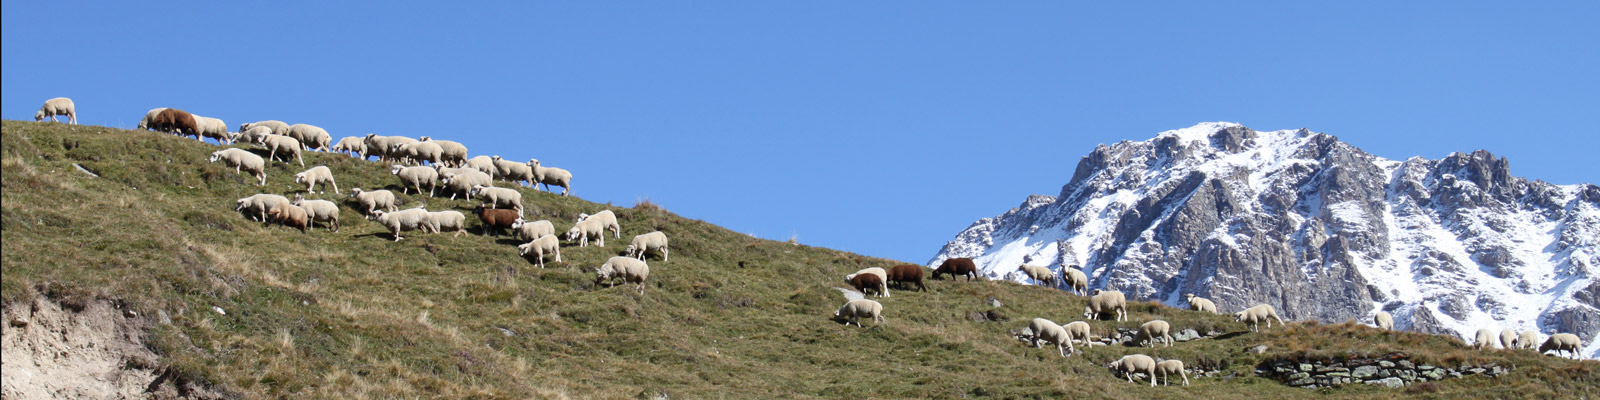 moutons montagne